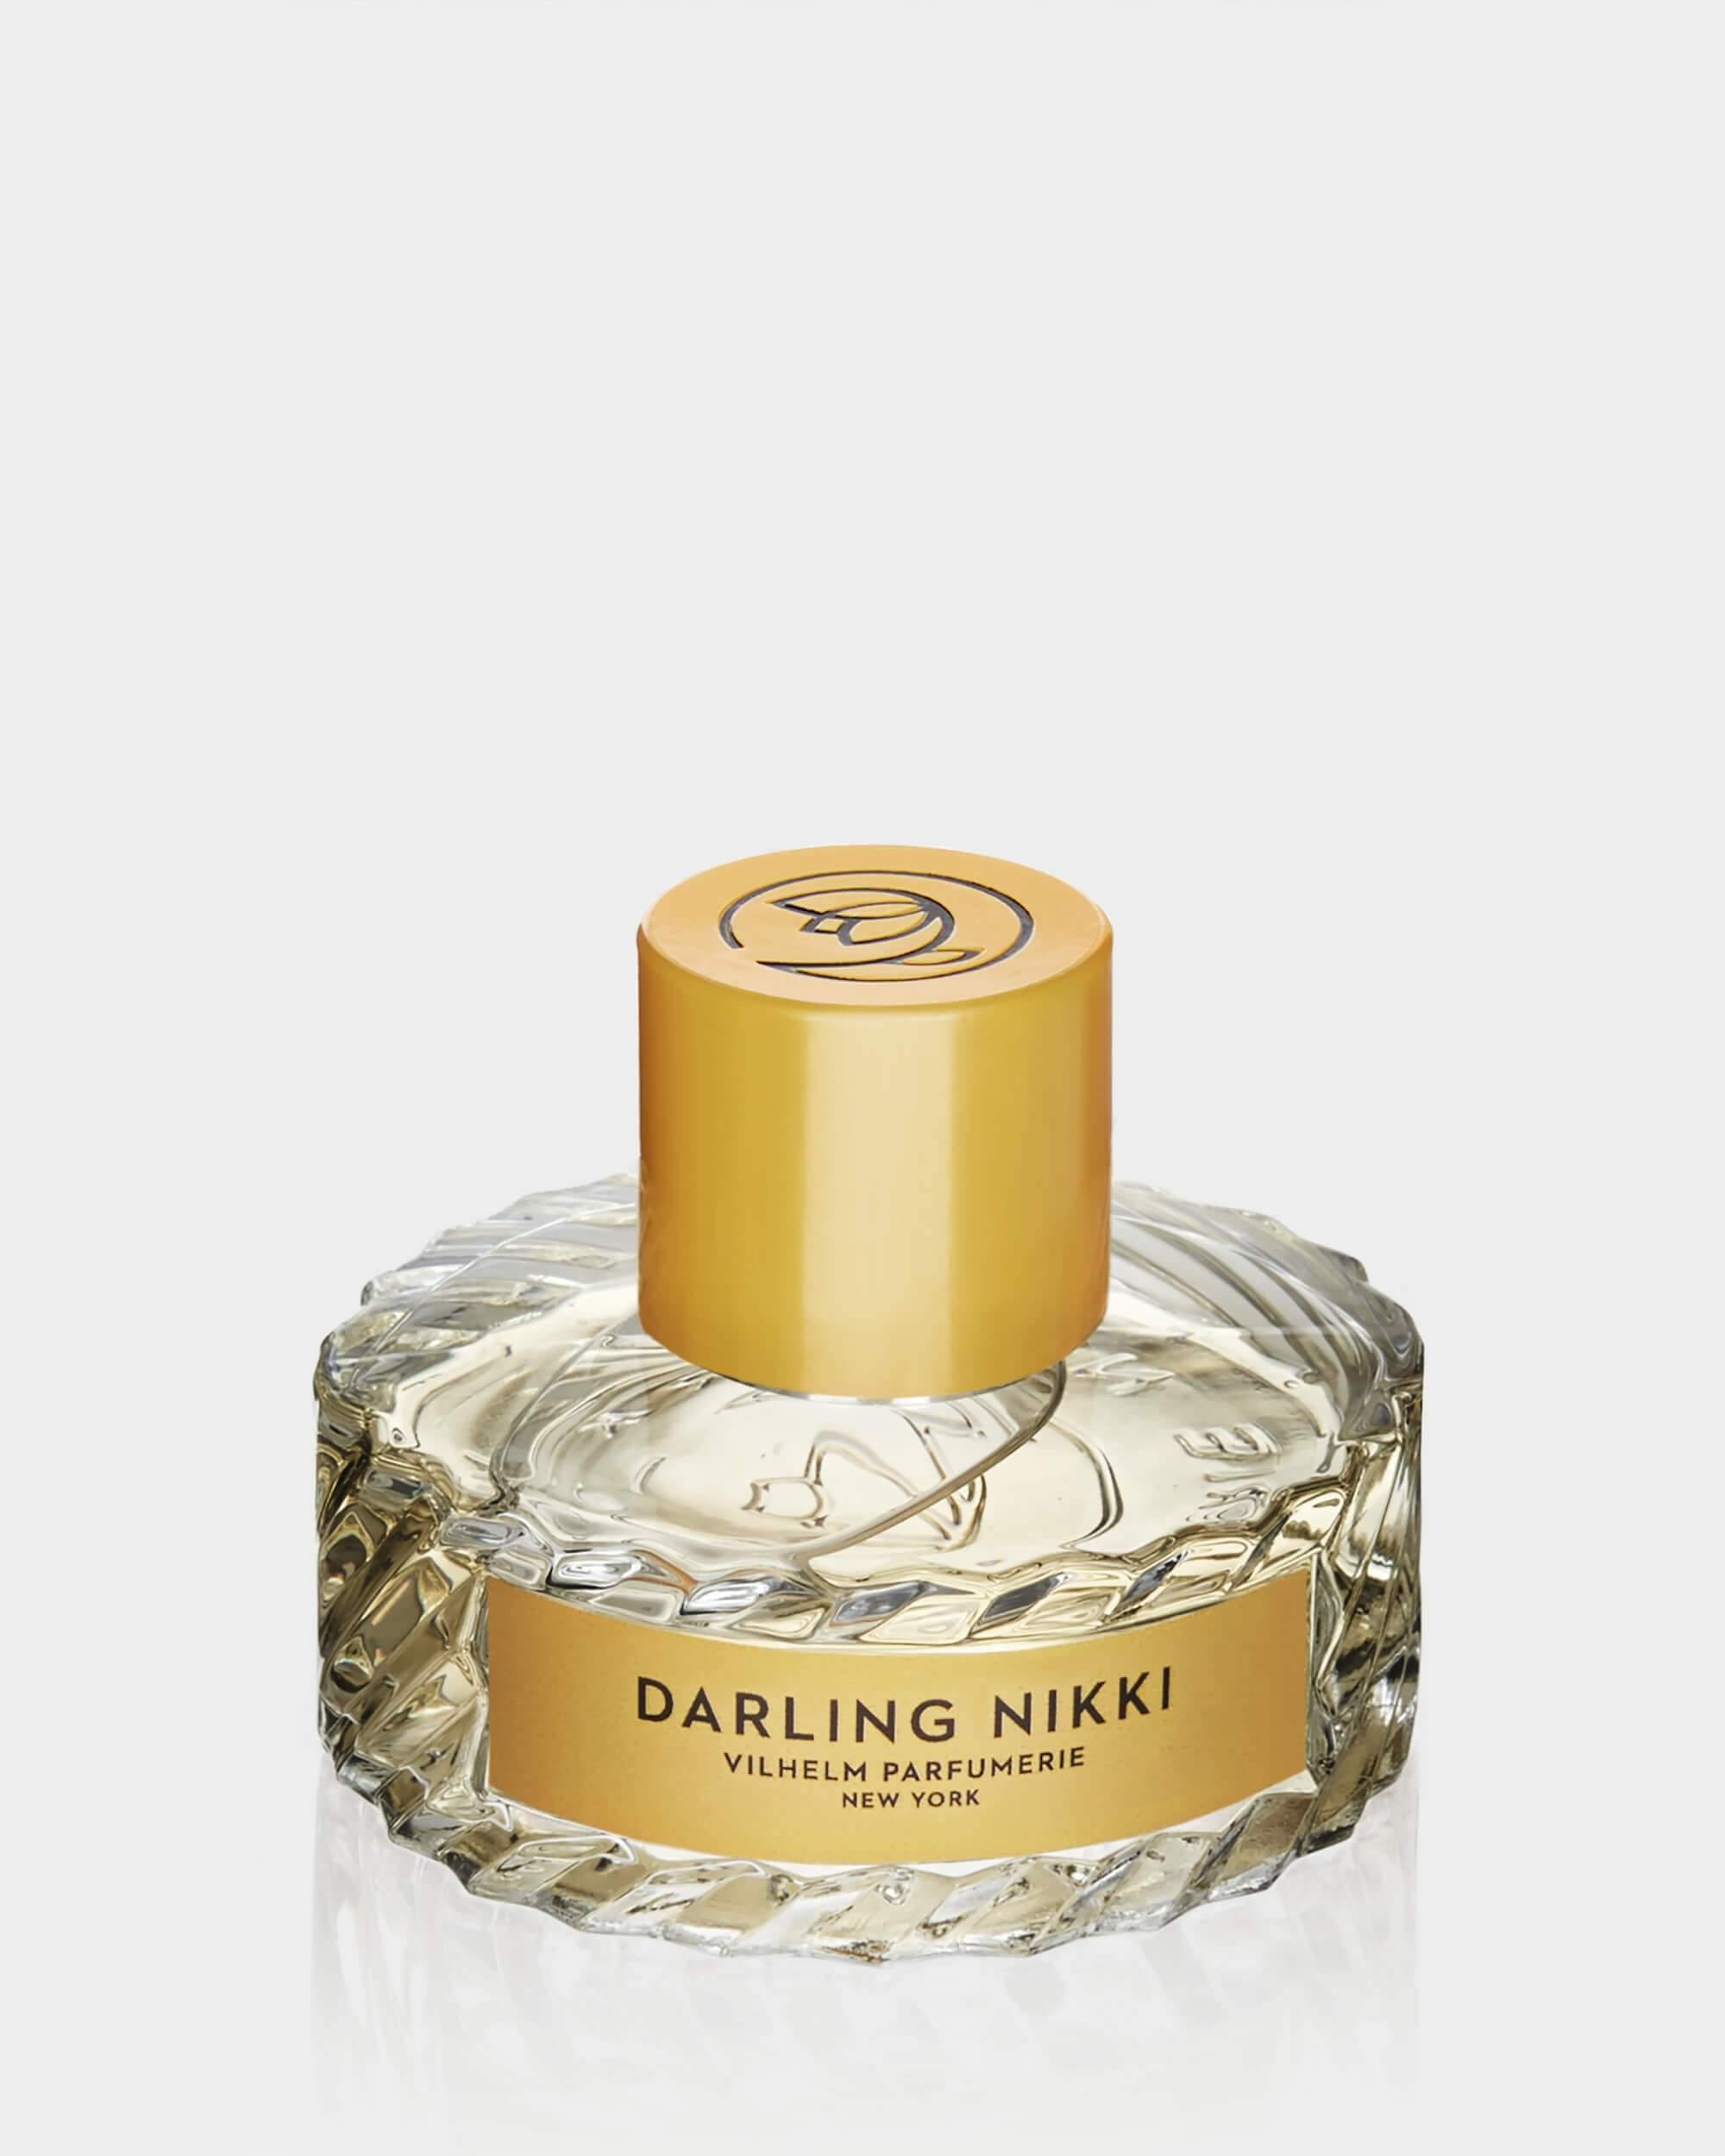 Darling Nikki Vilhelm Parfumerie 